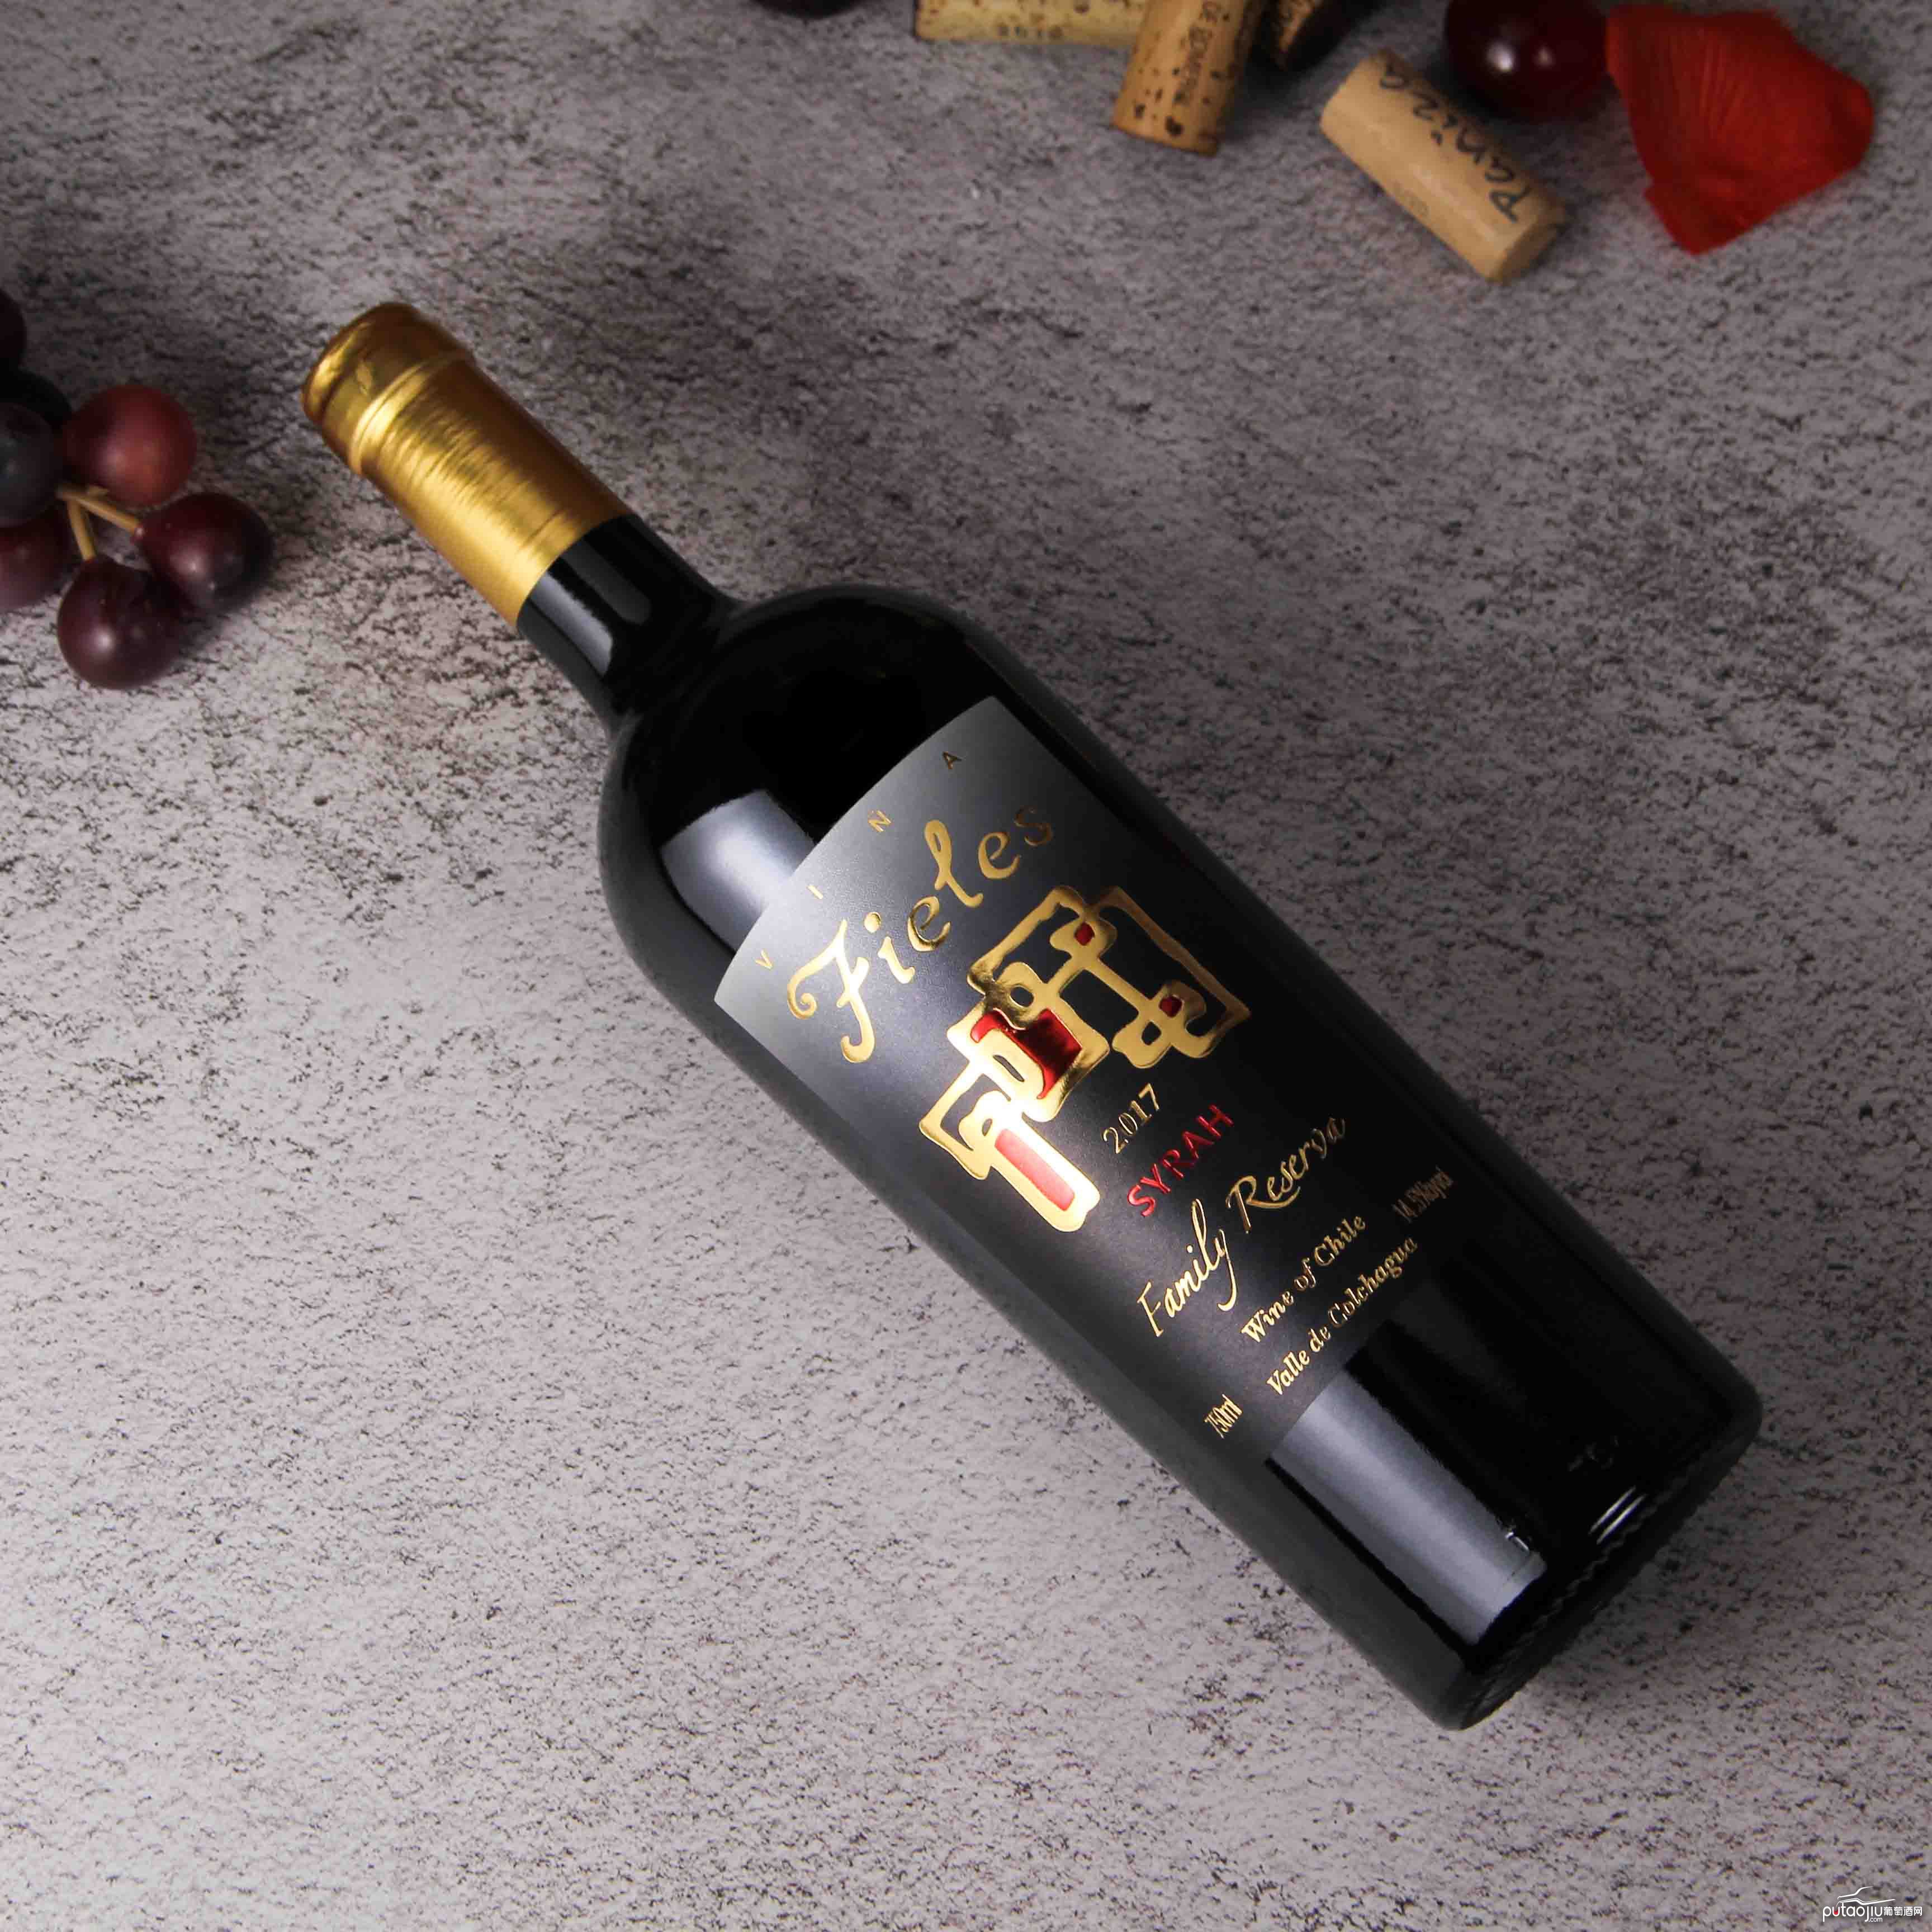 智利科尓查瓜谷菲利斯家族珍藏西拉红葡萄酒